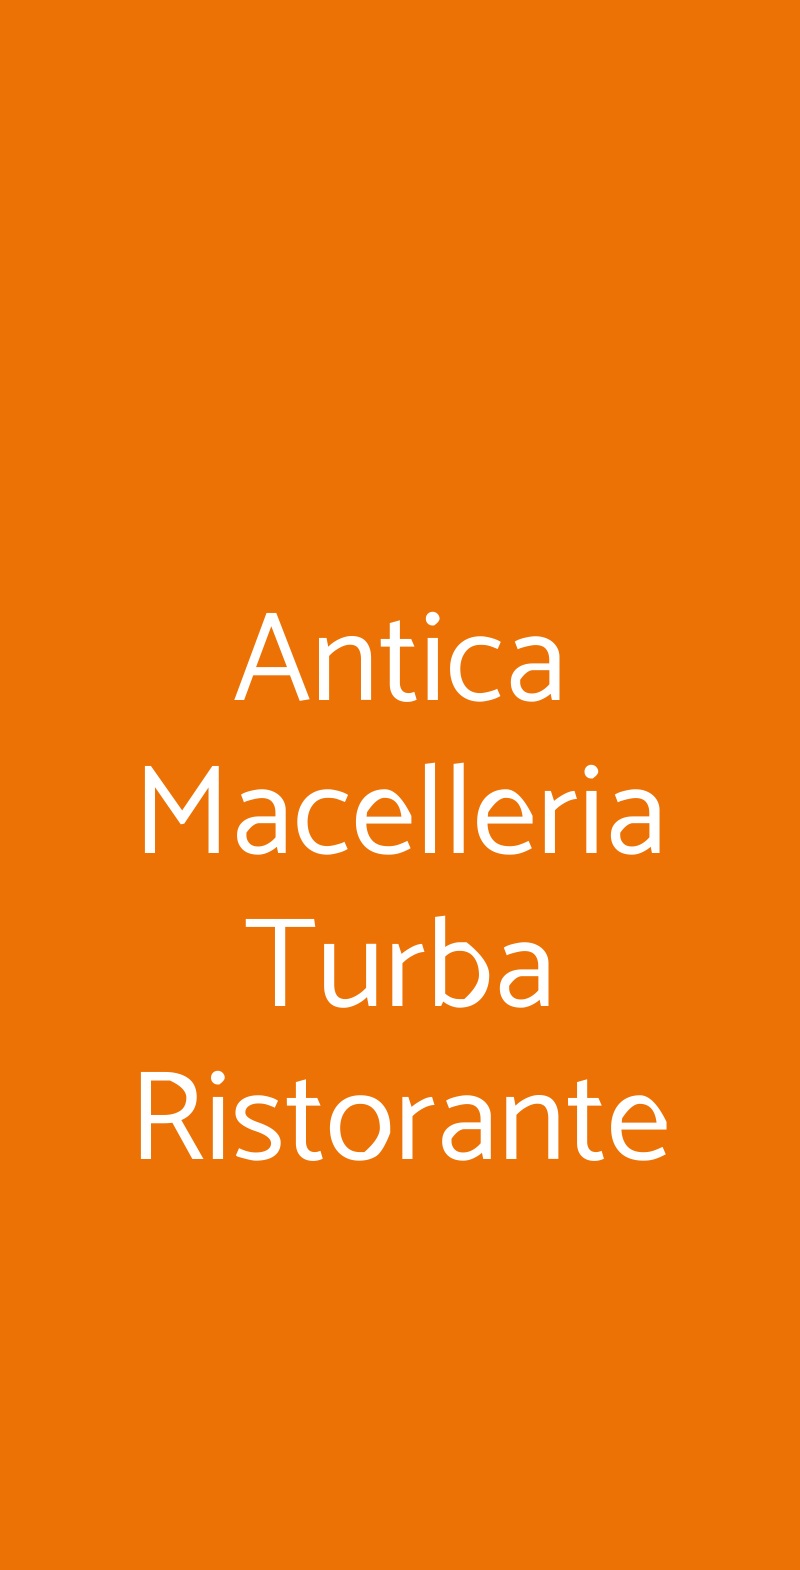 Antica Macelleria Turba Ristorante Rivolta d'Adda menù 1 pagina